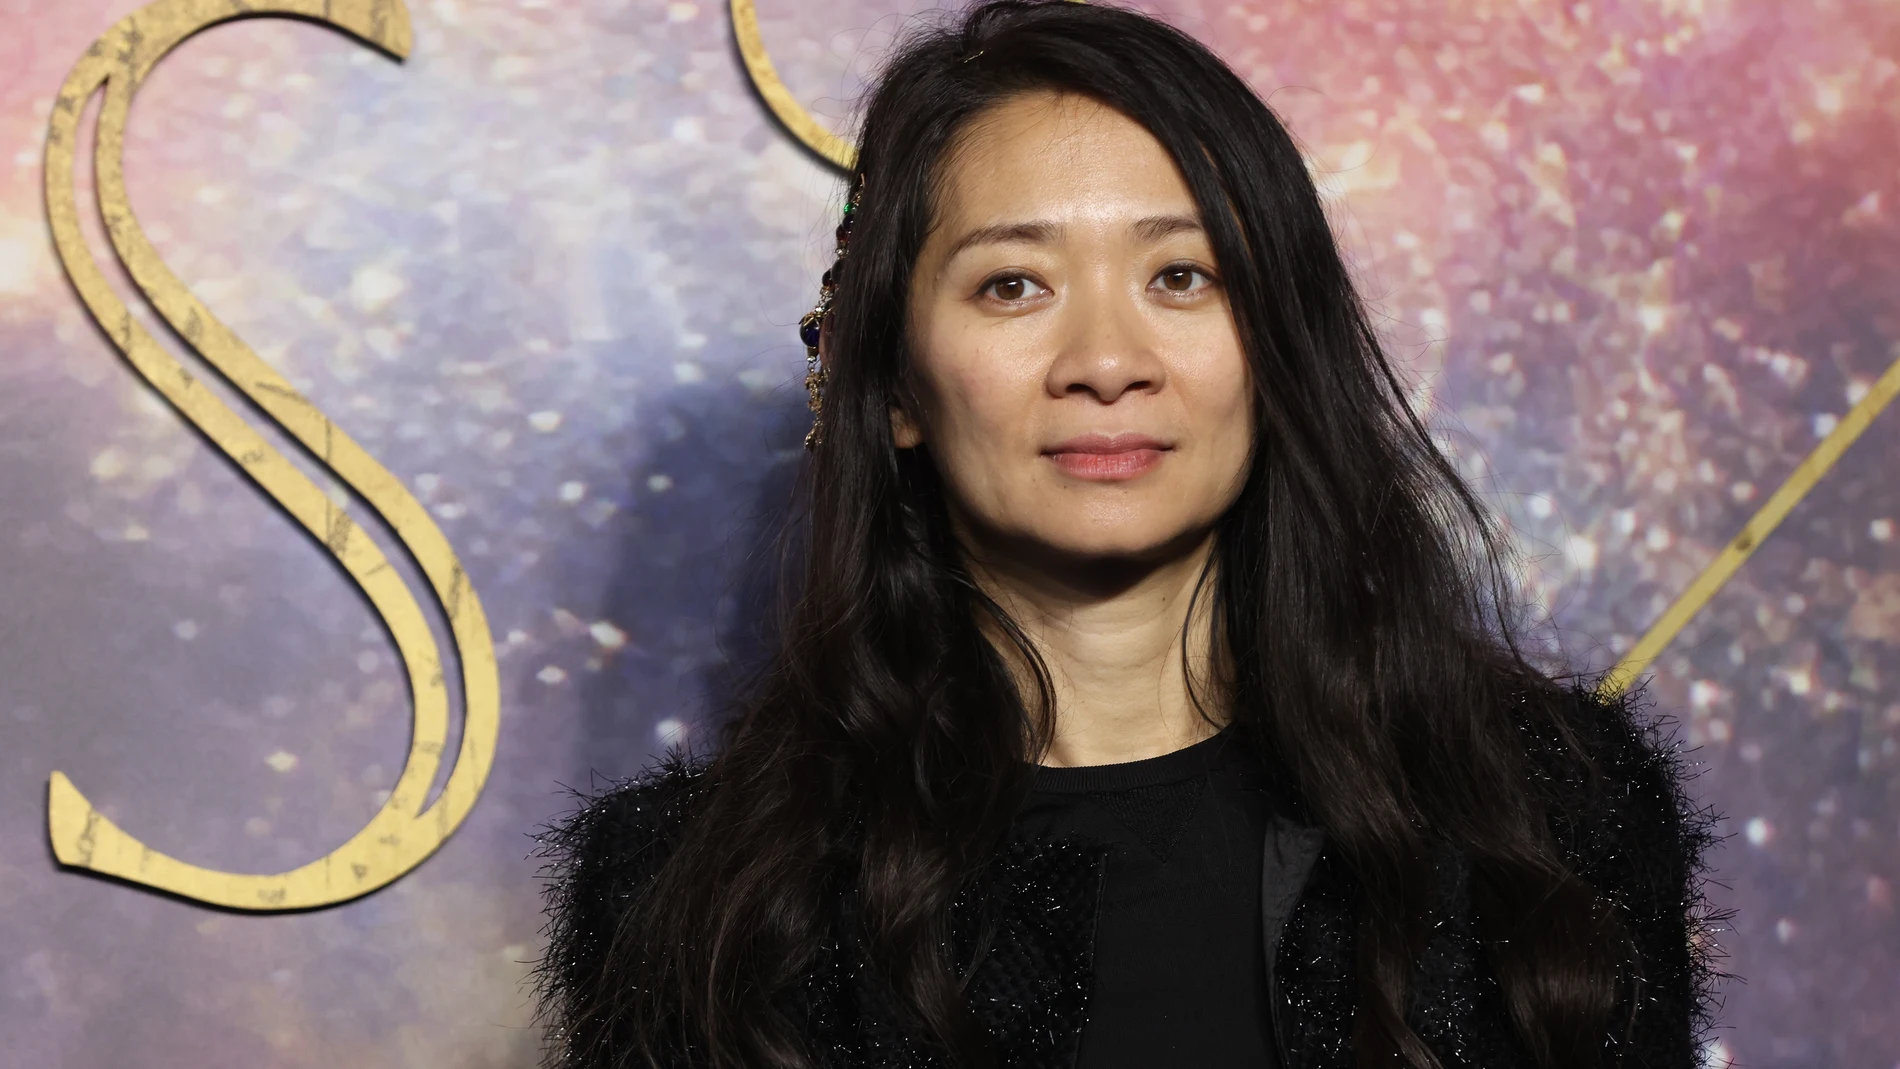 La directora Chloé Zhao, que estrena "Eternals" después de consagrarse con el Oscar a la Mejor Dirección por "Nomadland". EFE/EPA/VICKIE FLORES